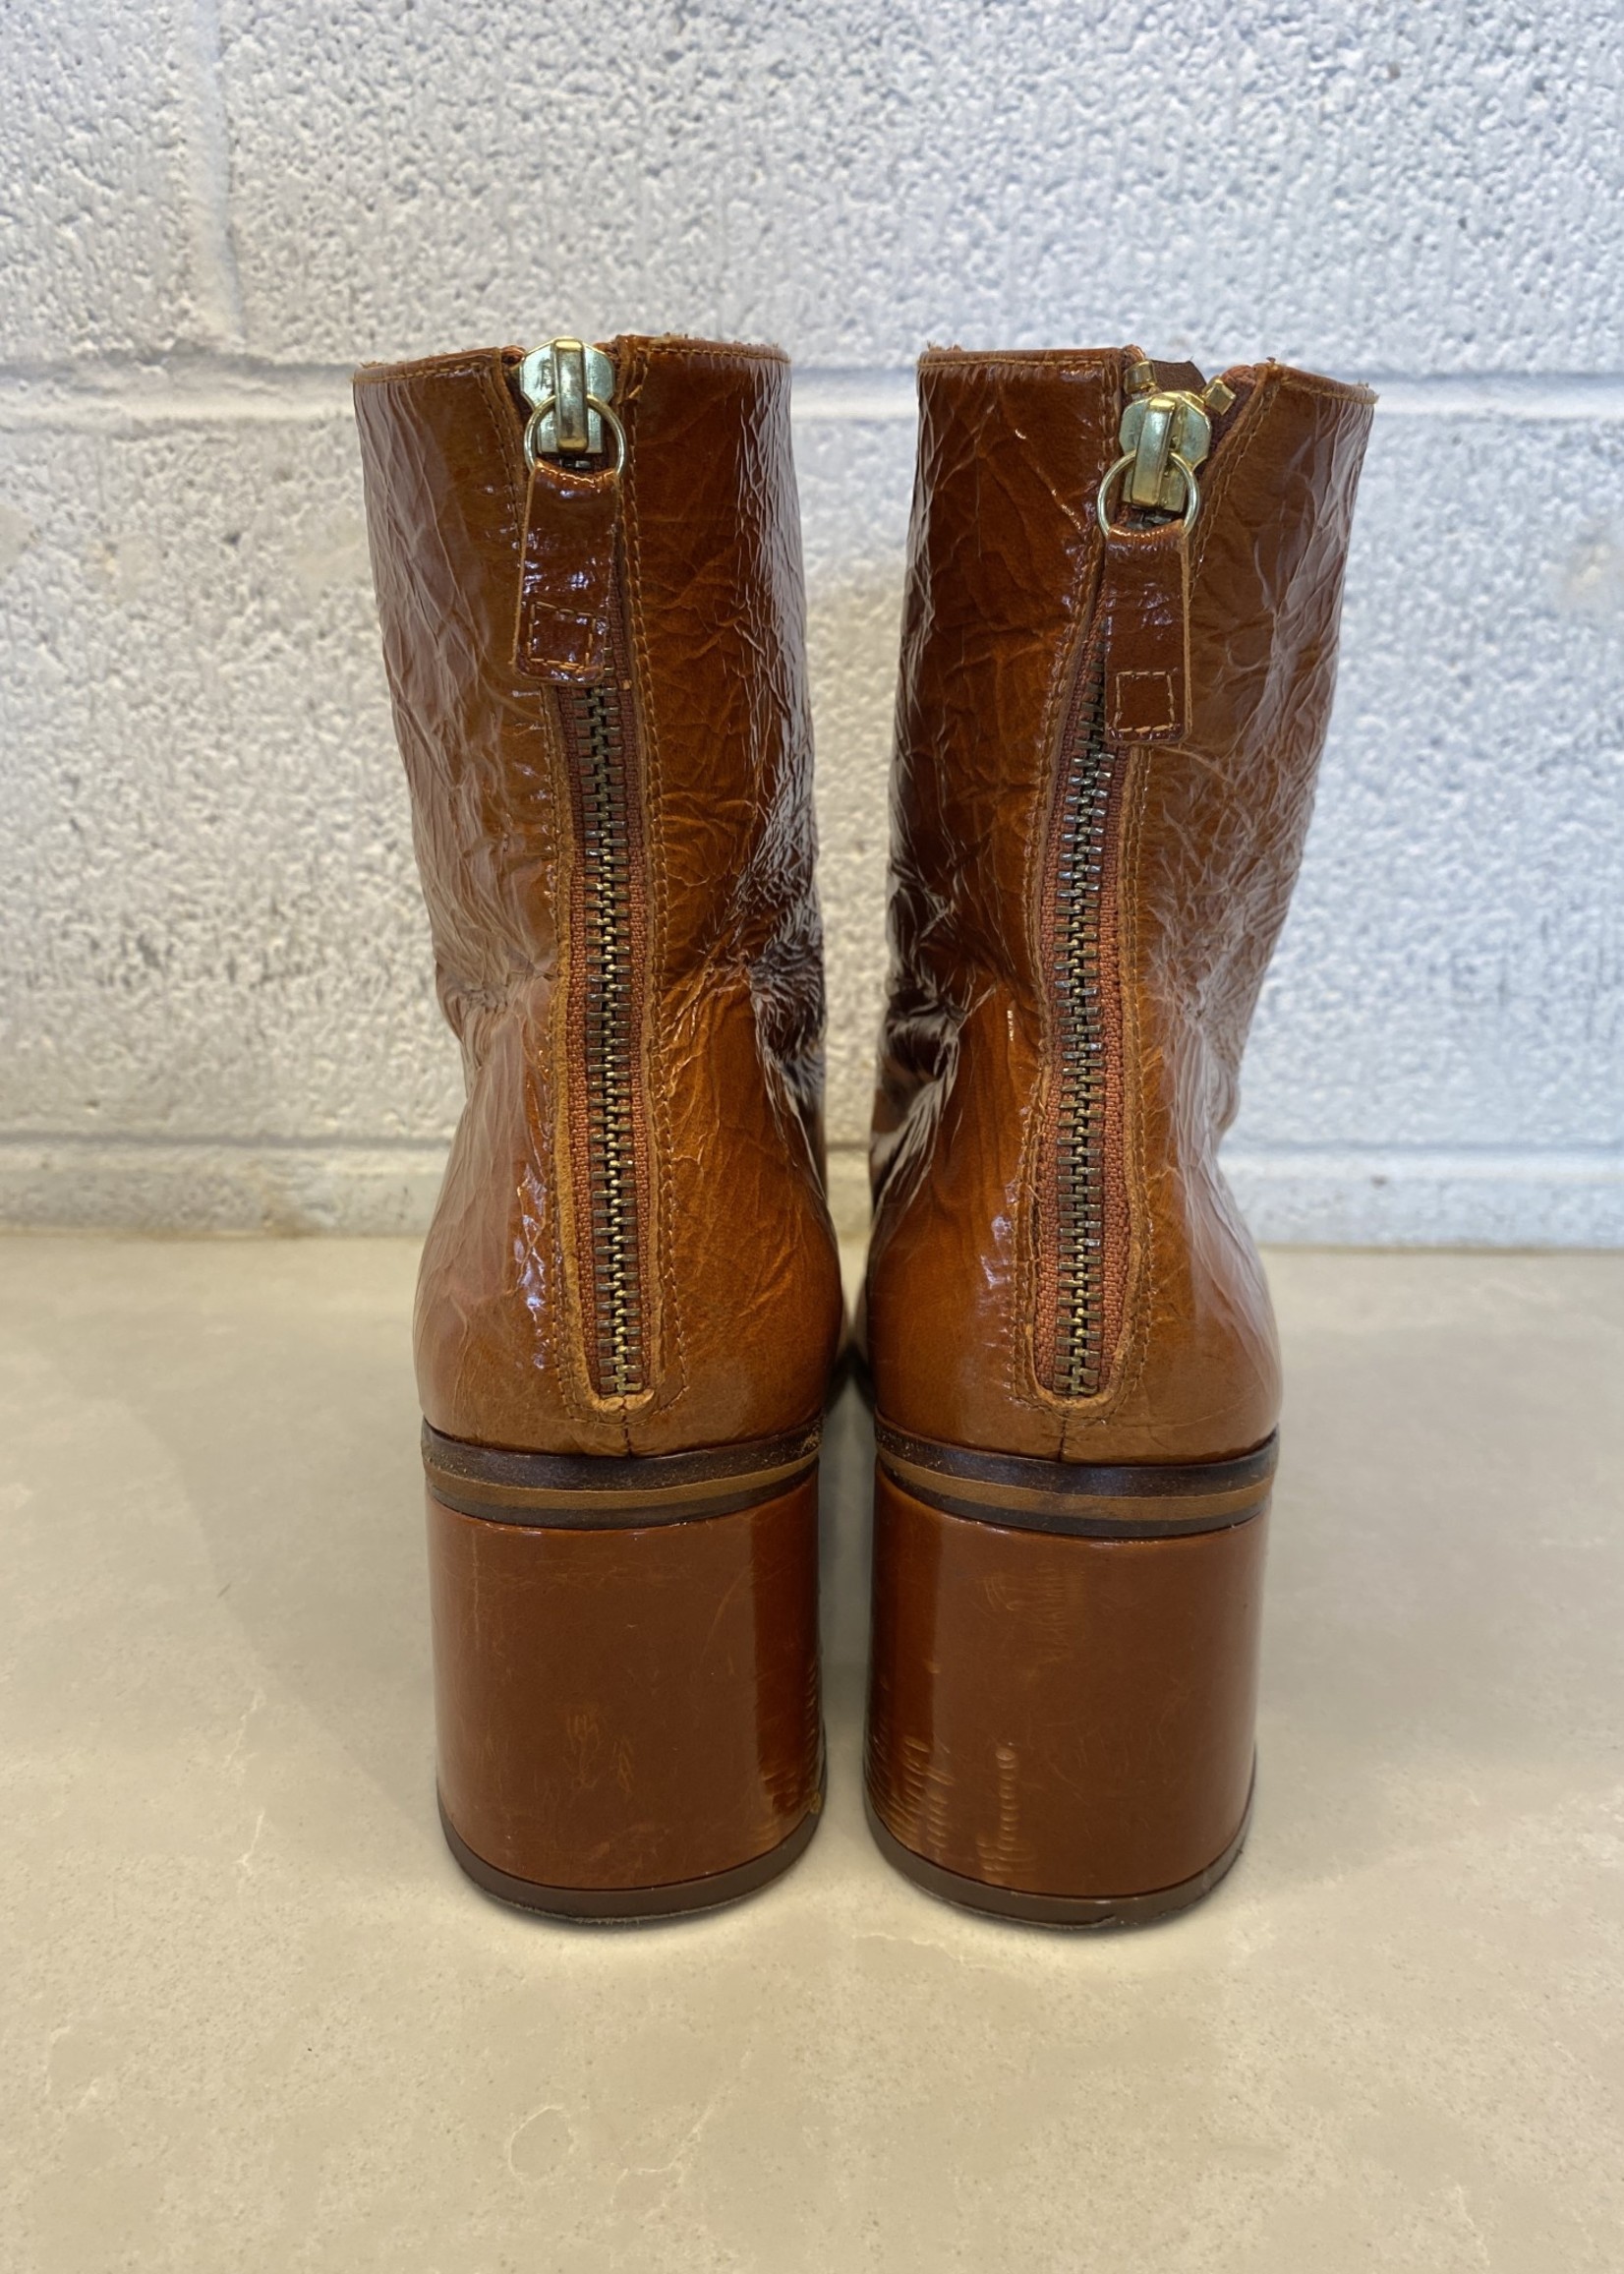 Miista Brown Heeled Boots 41/9.5